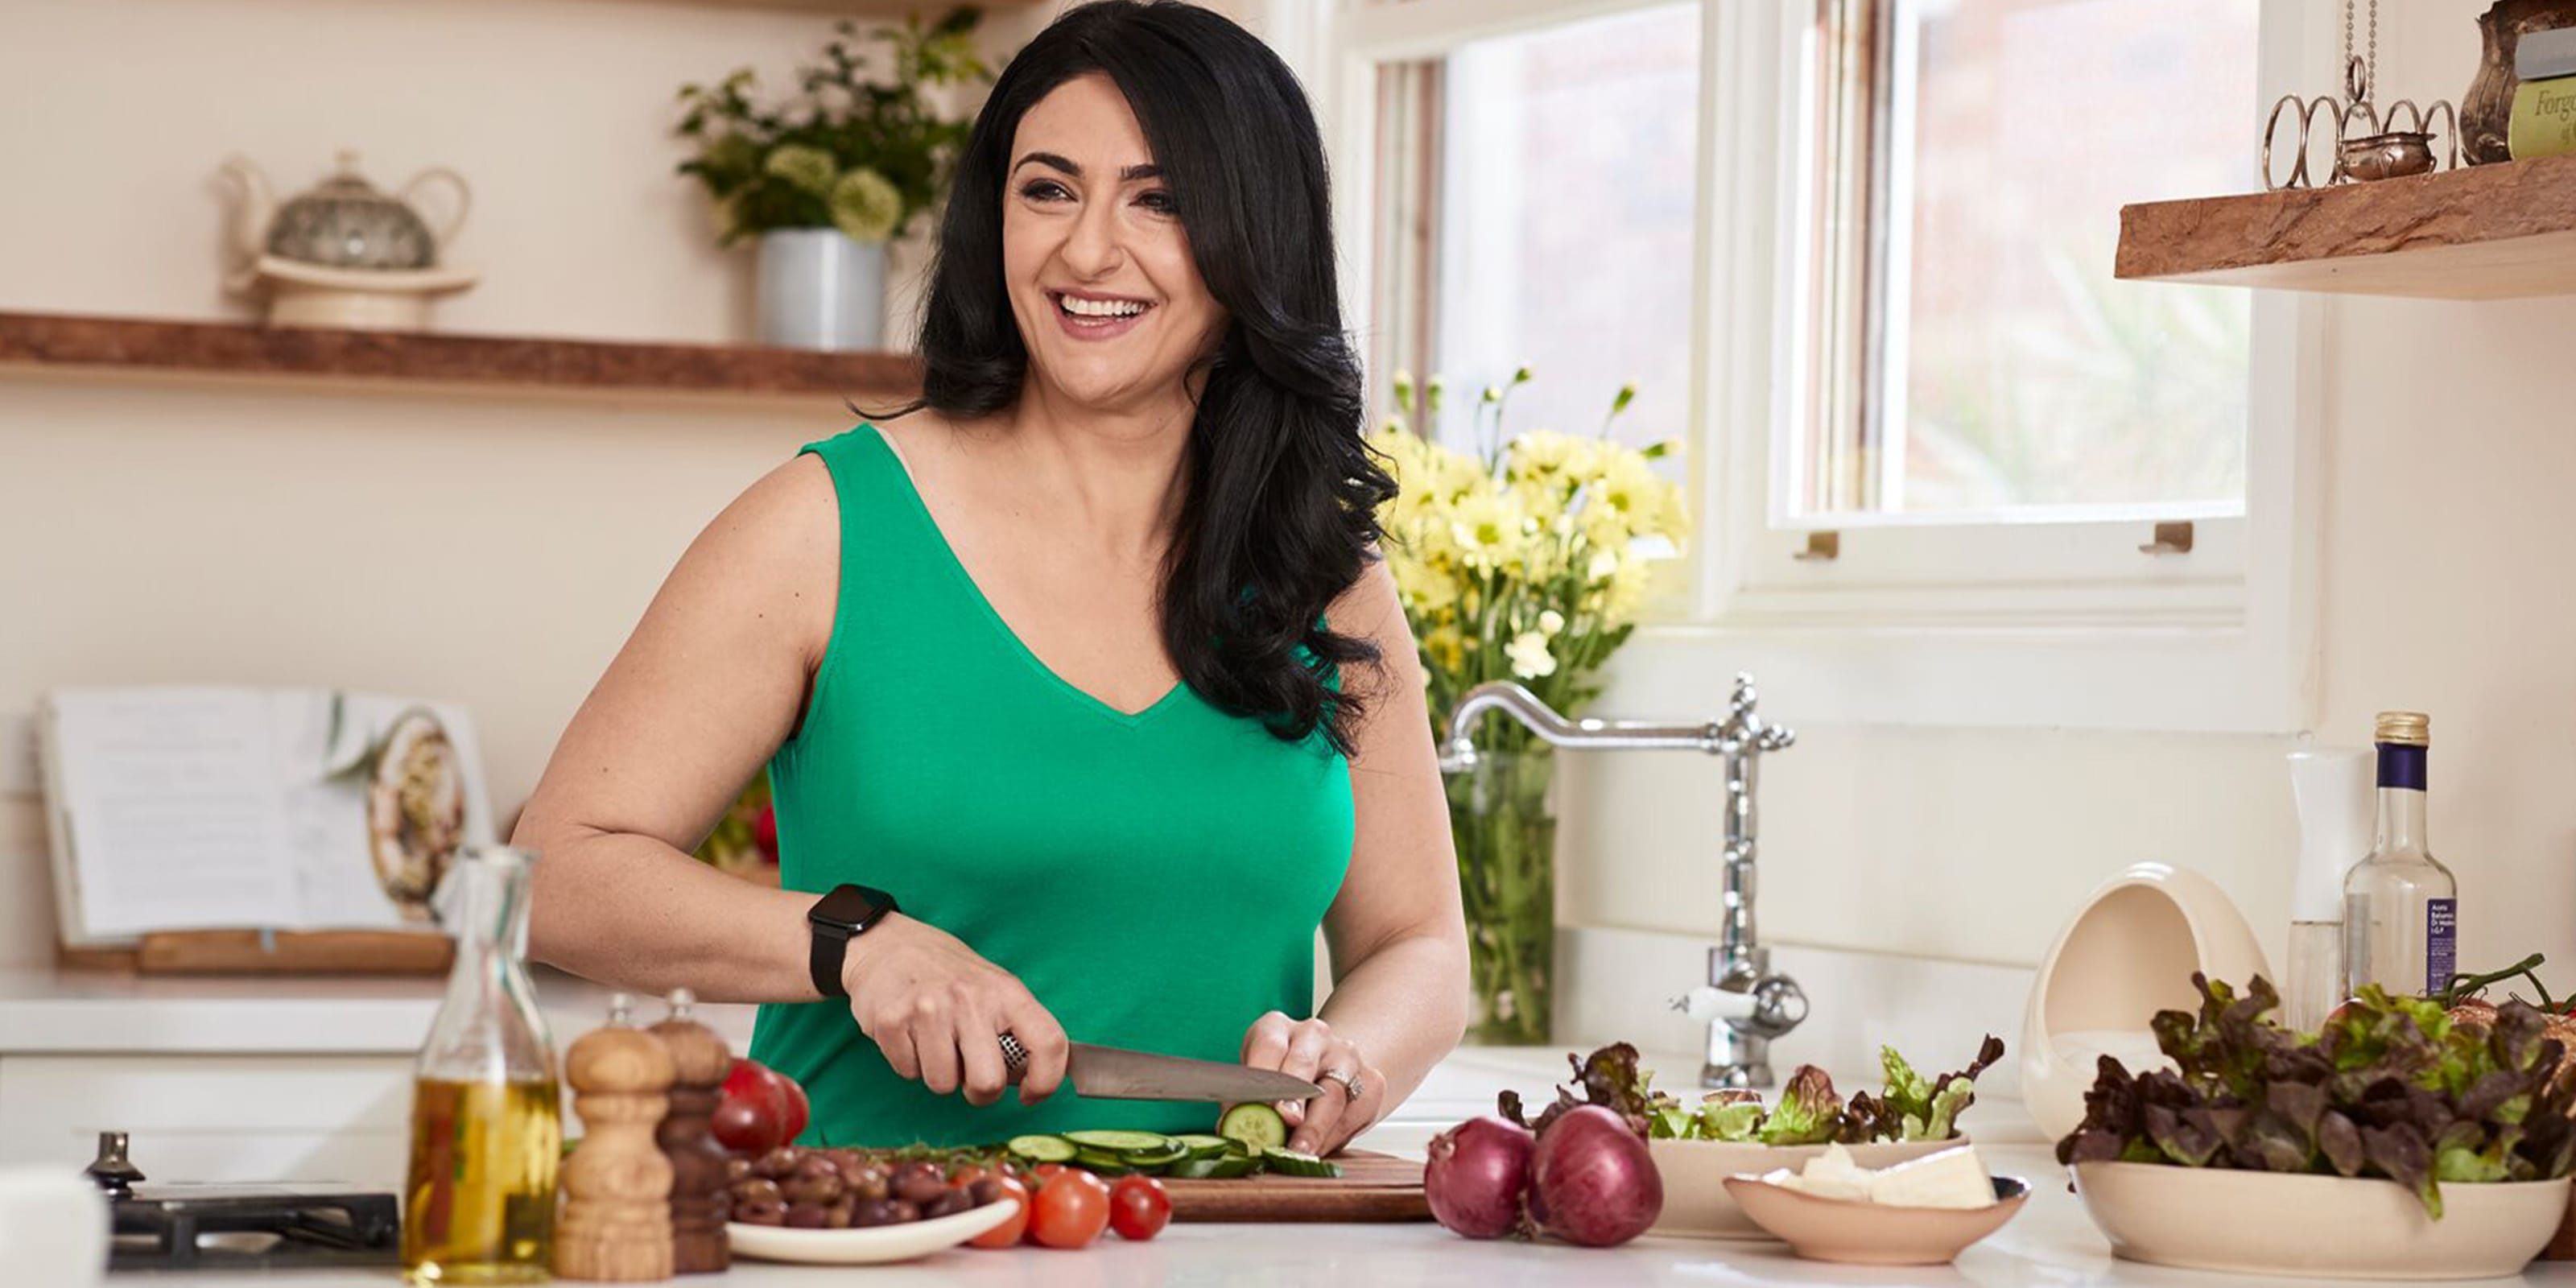 Frau mit dunklen Haaren und grünem Kleid schneidet Gemüse in der Küche